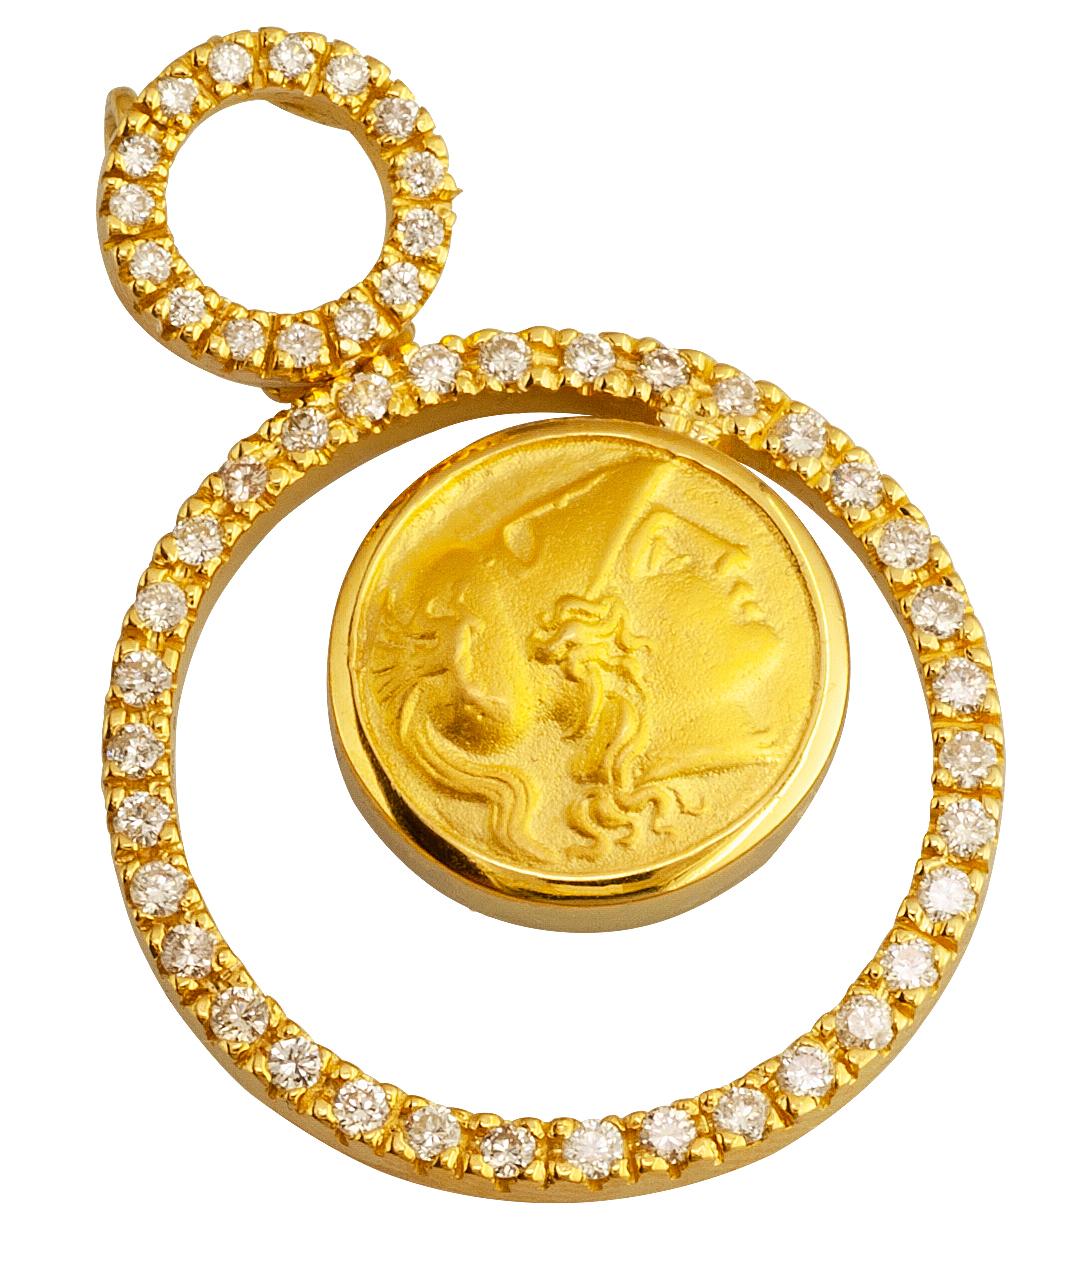 Diese S.Georgios Designer 18 Karat Gold Diamant Athena Münze Anhänger Halskette ist alle handgefertigt. Er verfügt über zwei Lünetten mit weißen Diamanten im Brillantschliff mit einem Gesamtgewicht von 0,84 Karat in einem einzigartigen Design. Die